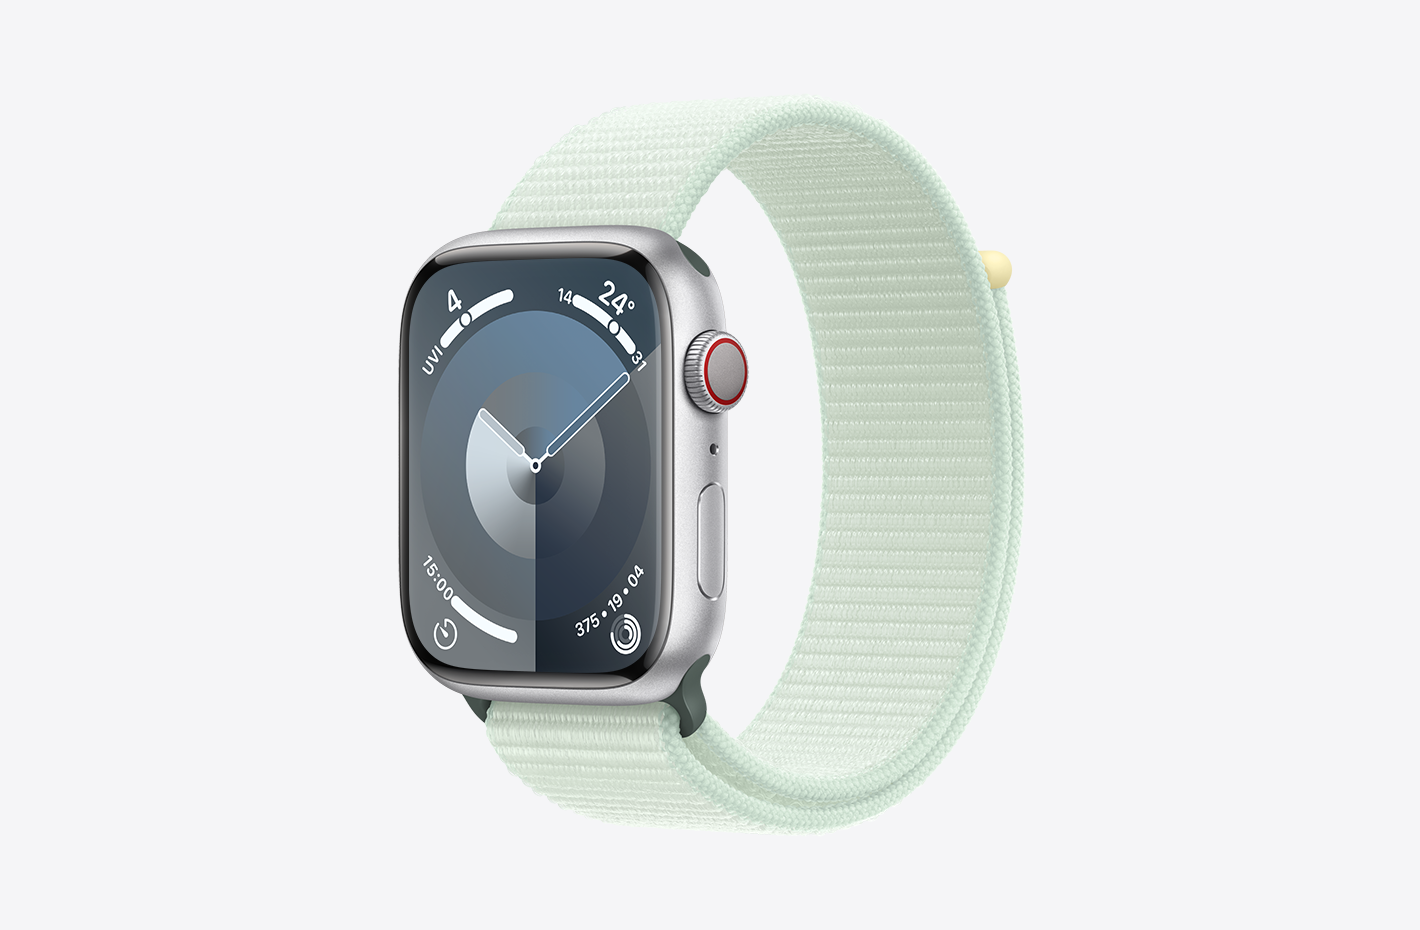 Apple Watch mit Aluminiumgehäuse Silber mit mattem Finish und Schrägansicht des Sport Loop Blassmint (Grün), mit Klettverschluss und doppel­lagigem Nylon-Maschen­gewebe